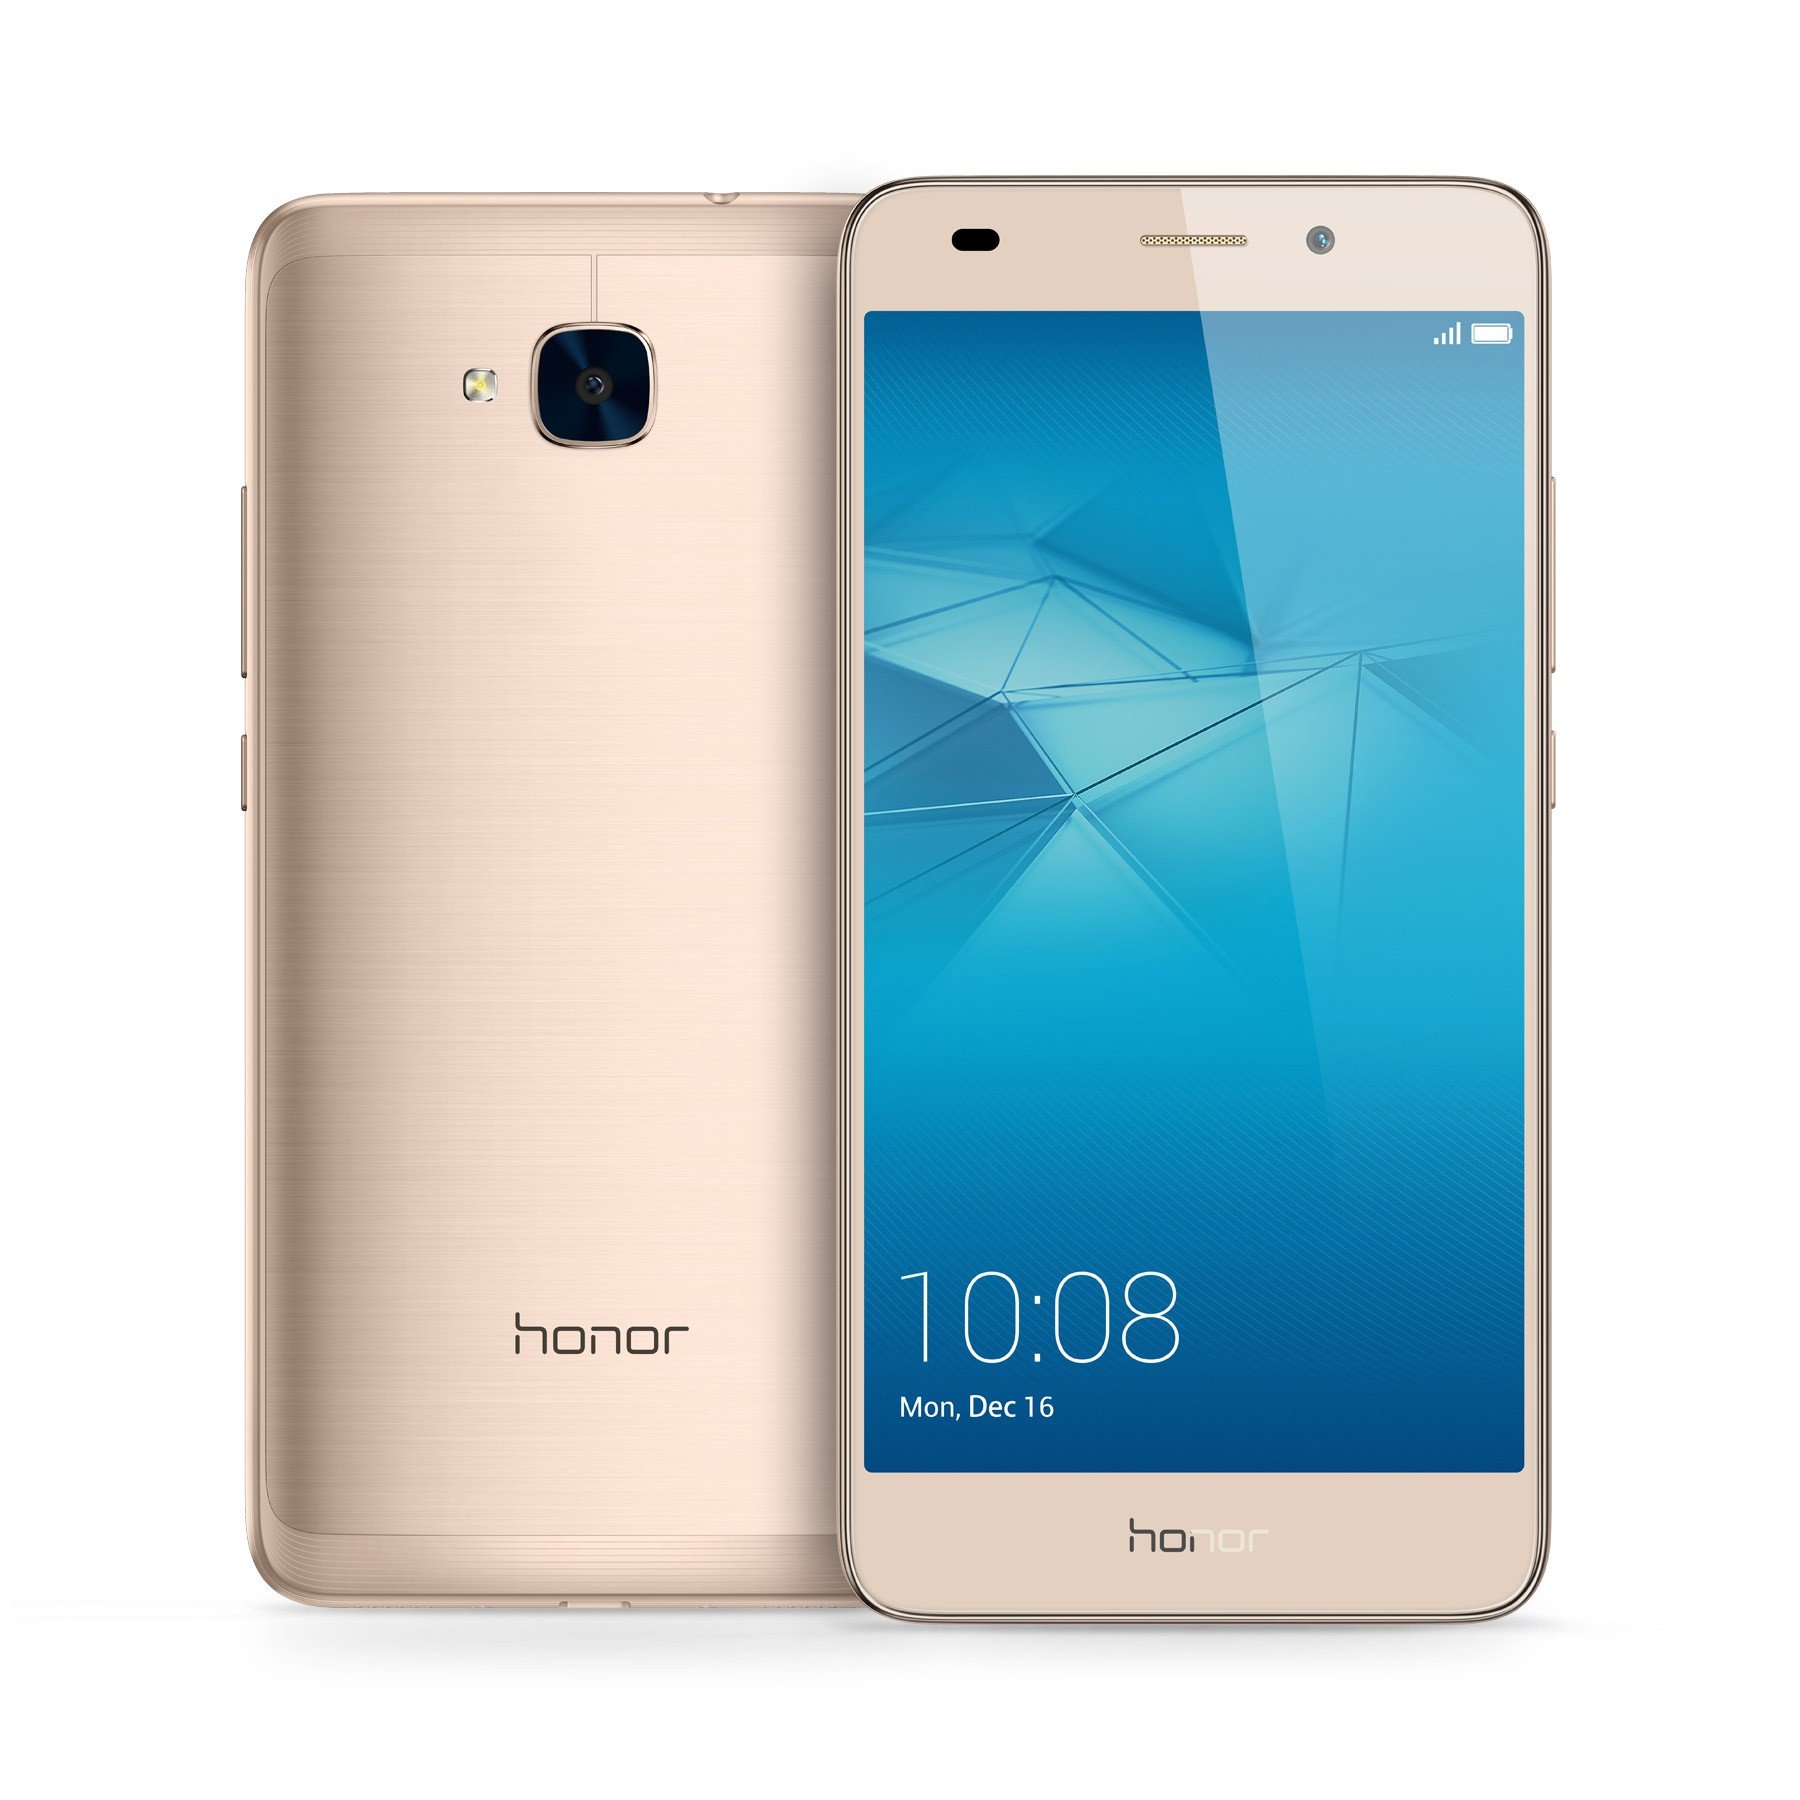  Huawei Honor  5c Fiche technique et caract ristiques test 